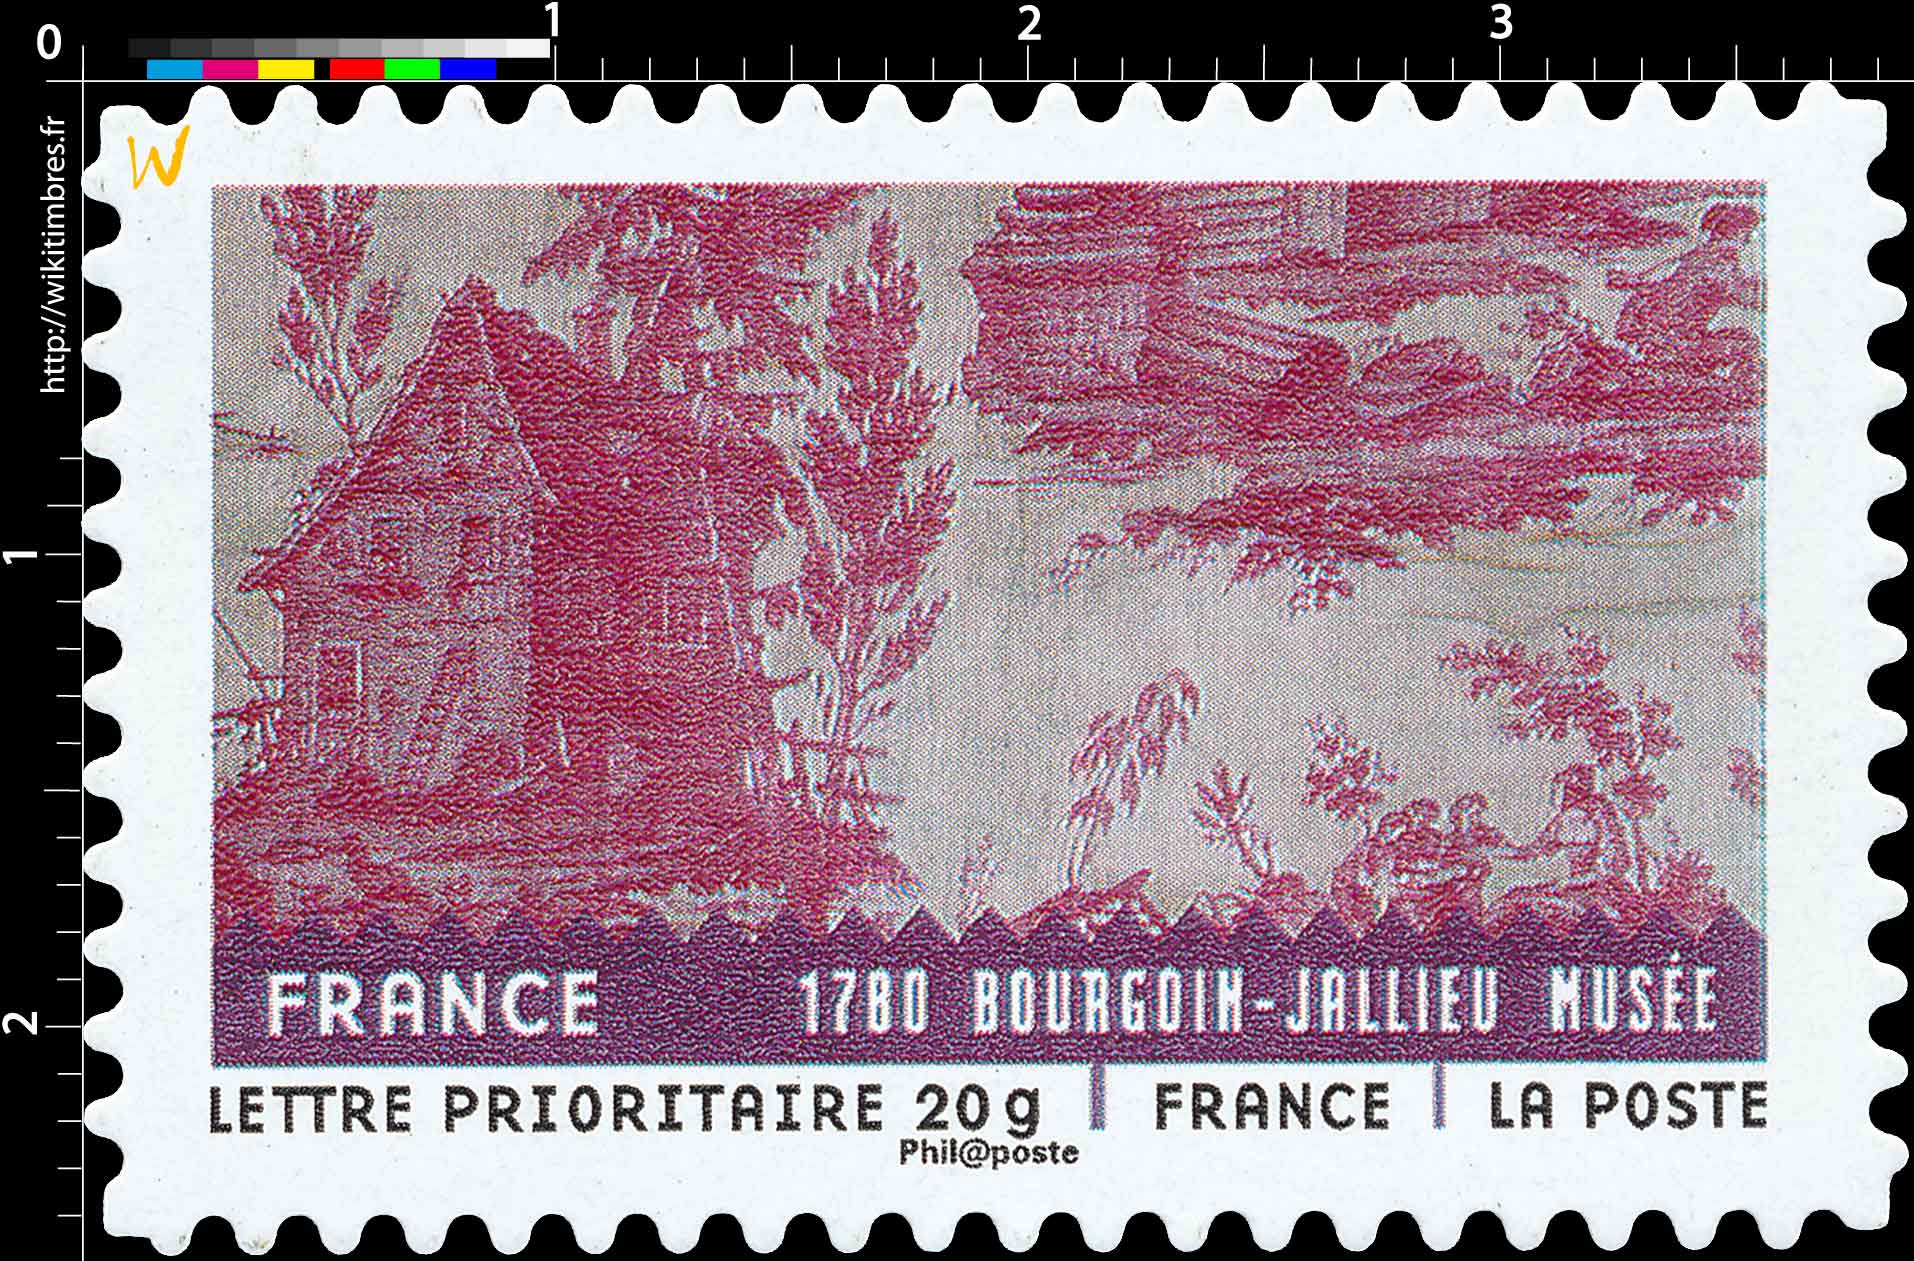 France 1780 BOURGOIN-JALLIEU MUSÉE